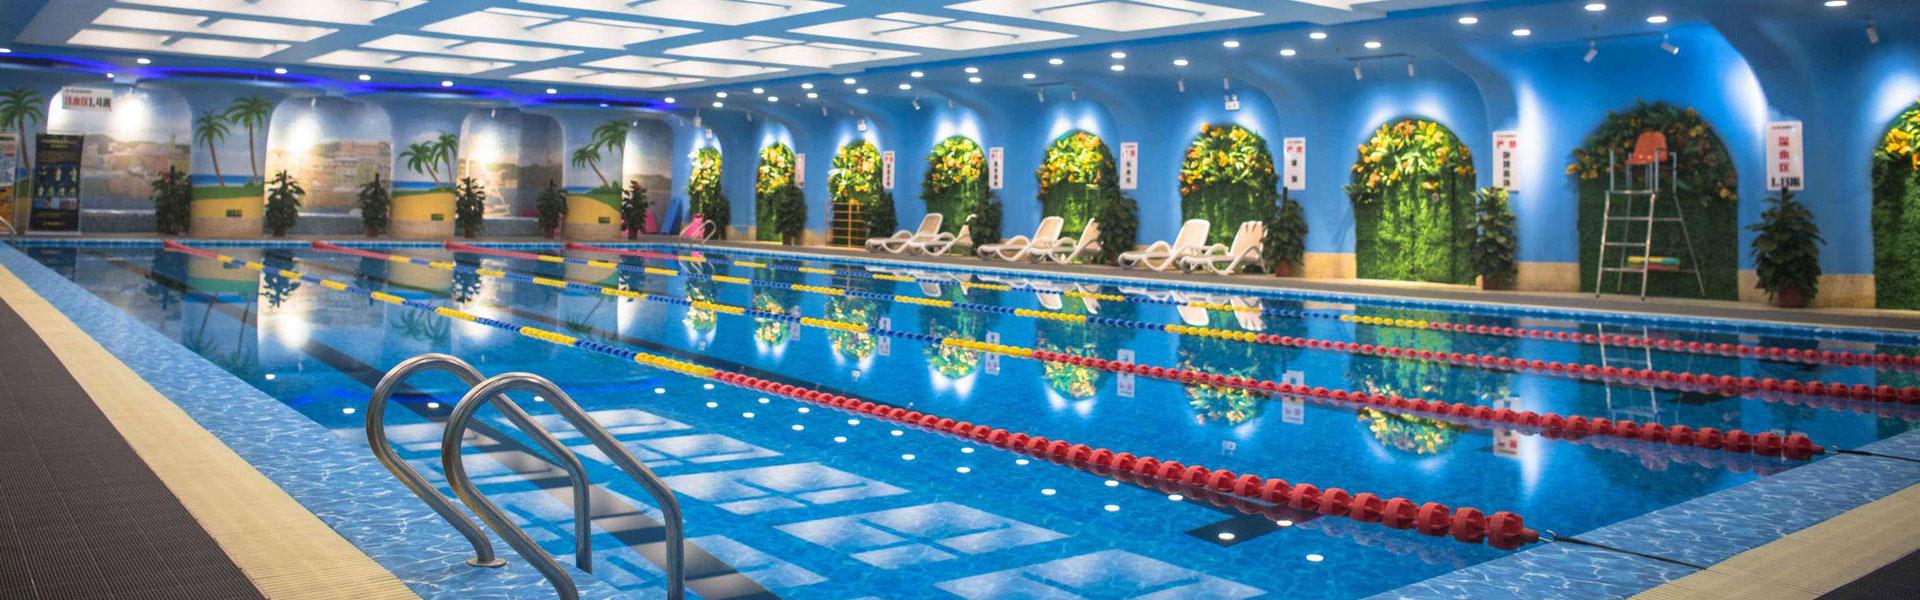 北京宽旗室内温泉水疗-游泳池设备